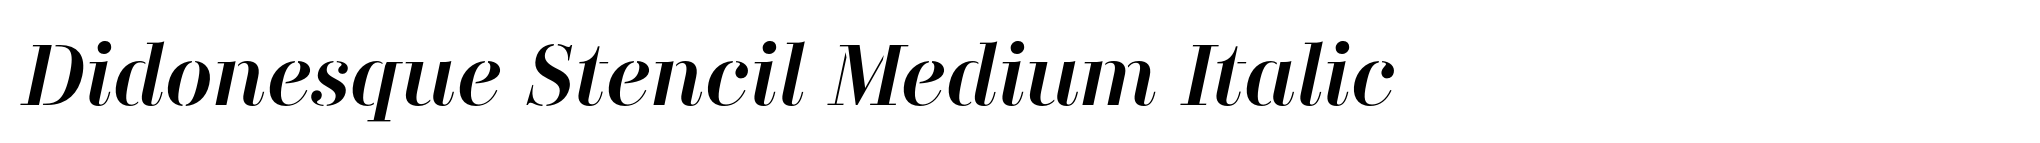 Didonesque Stencil Medium Italic image